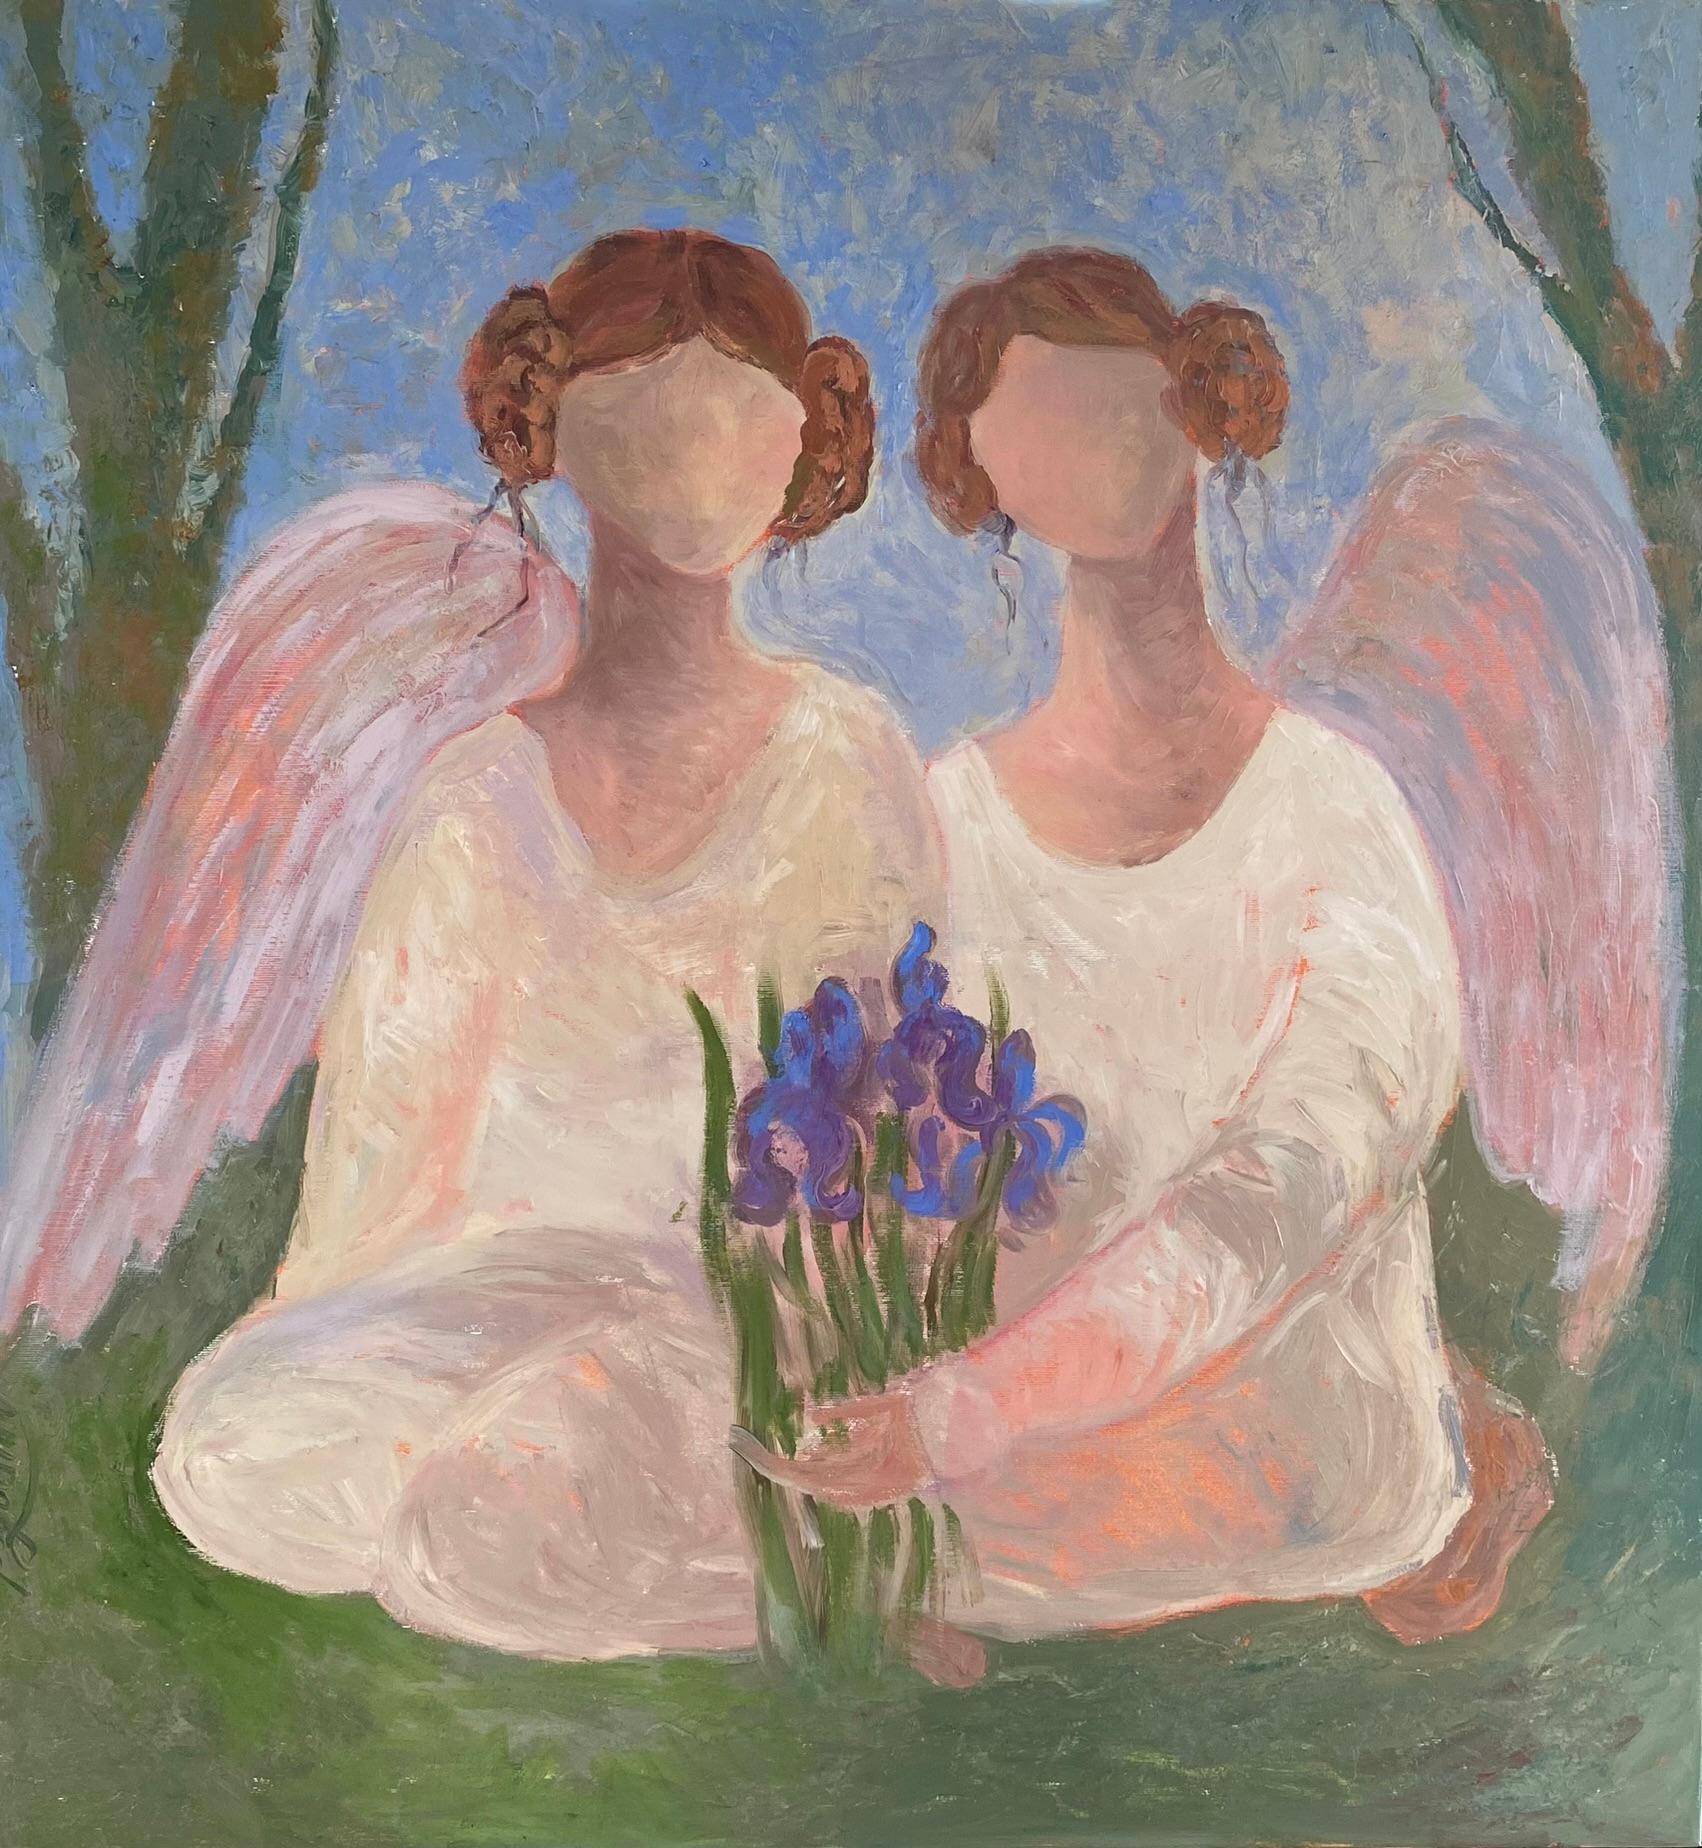 Peinture d'ange - SECRET GARDEN STORY, huile sur toile - 32*34 pouces (80*85 cm)